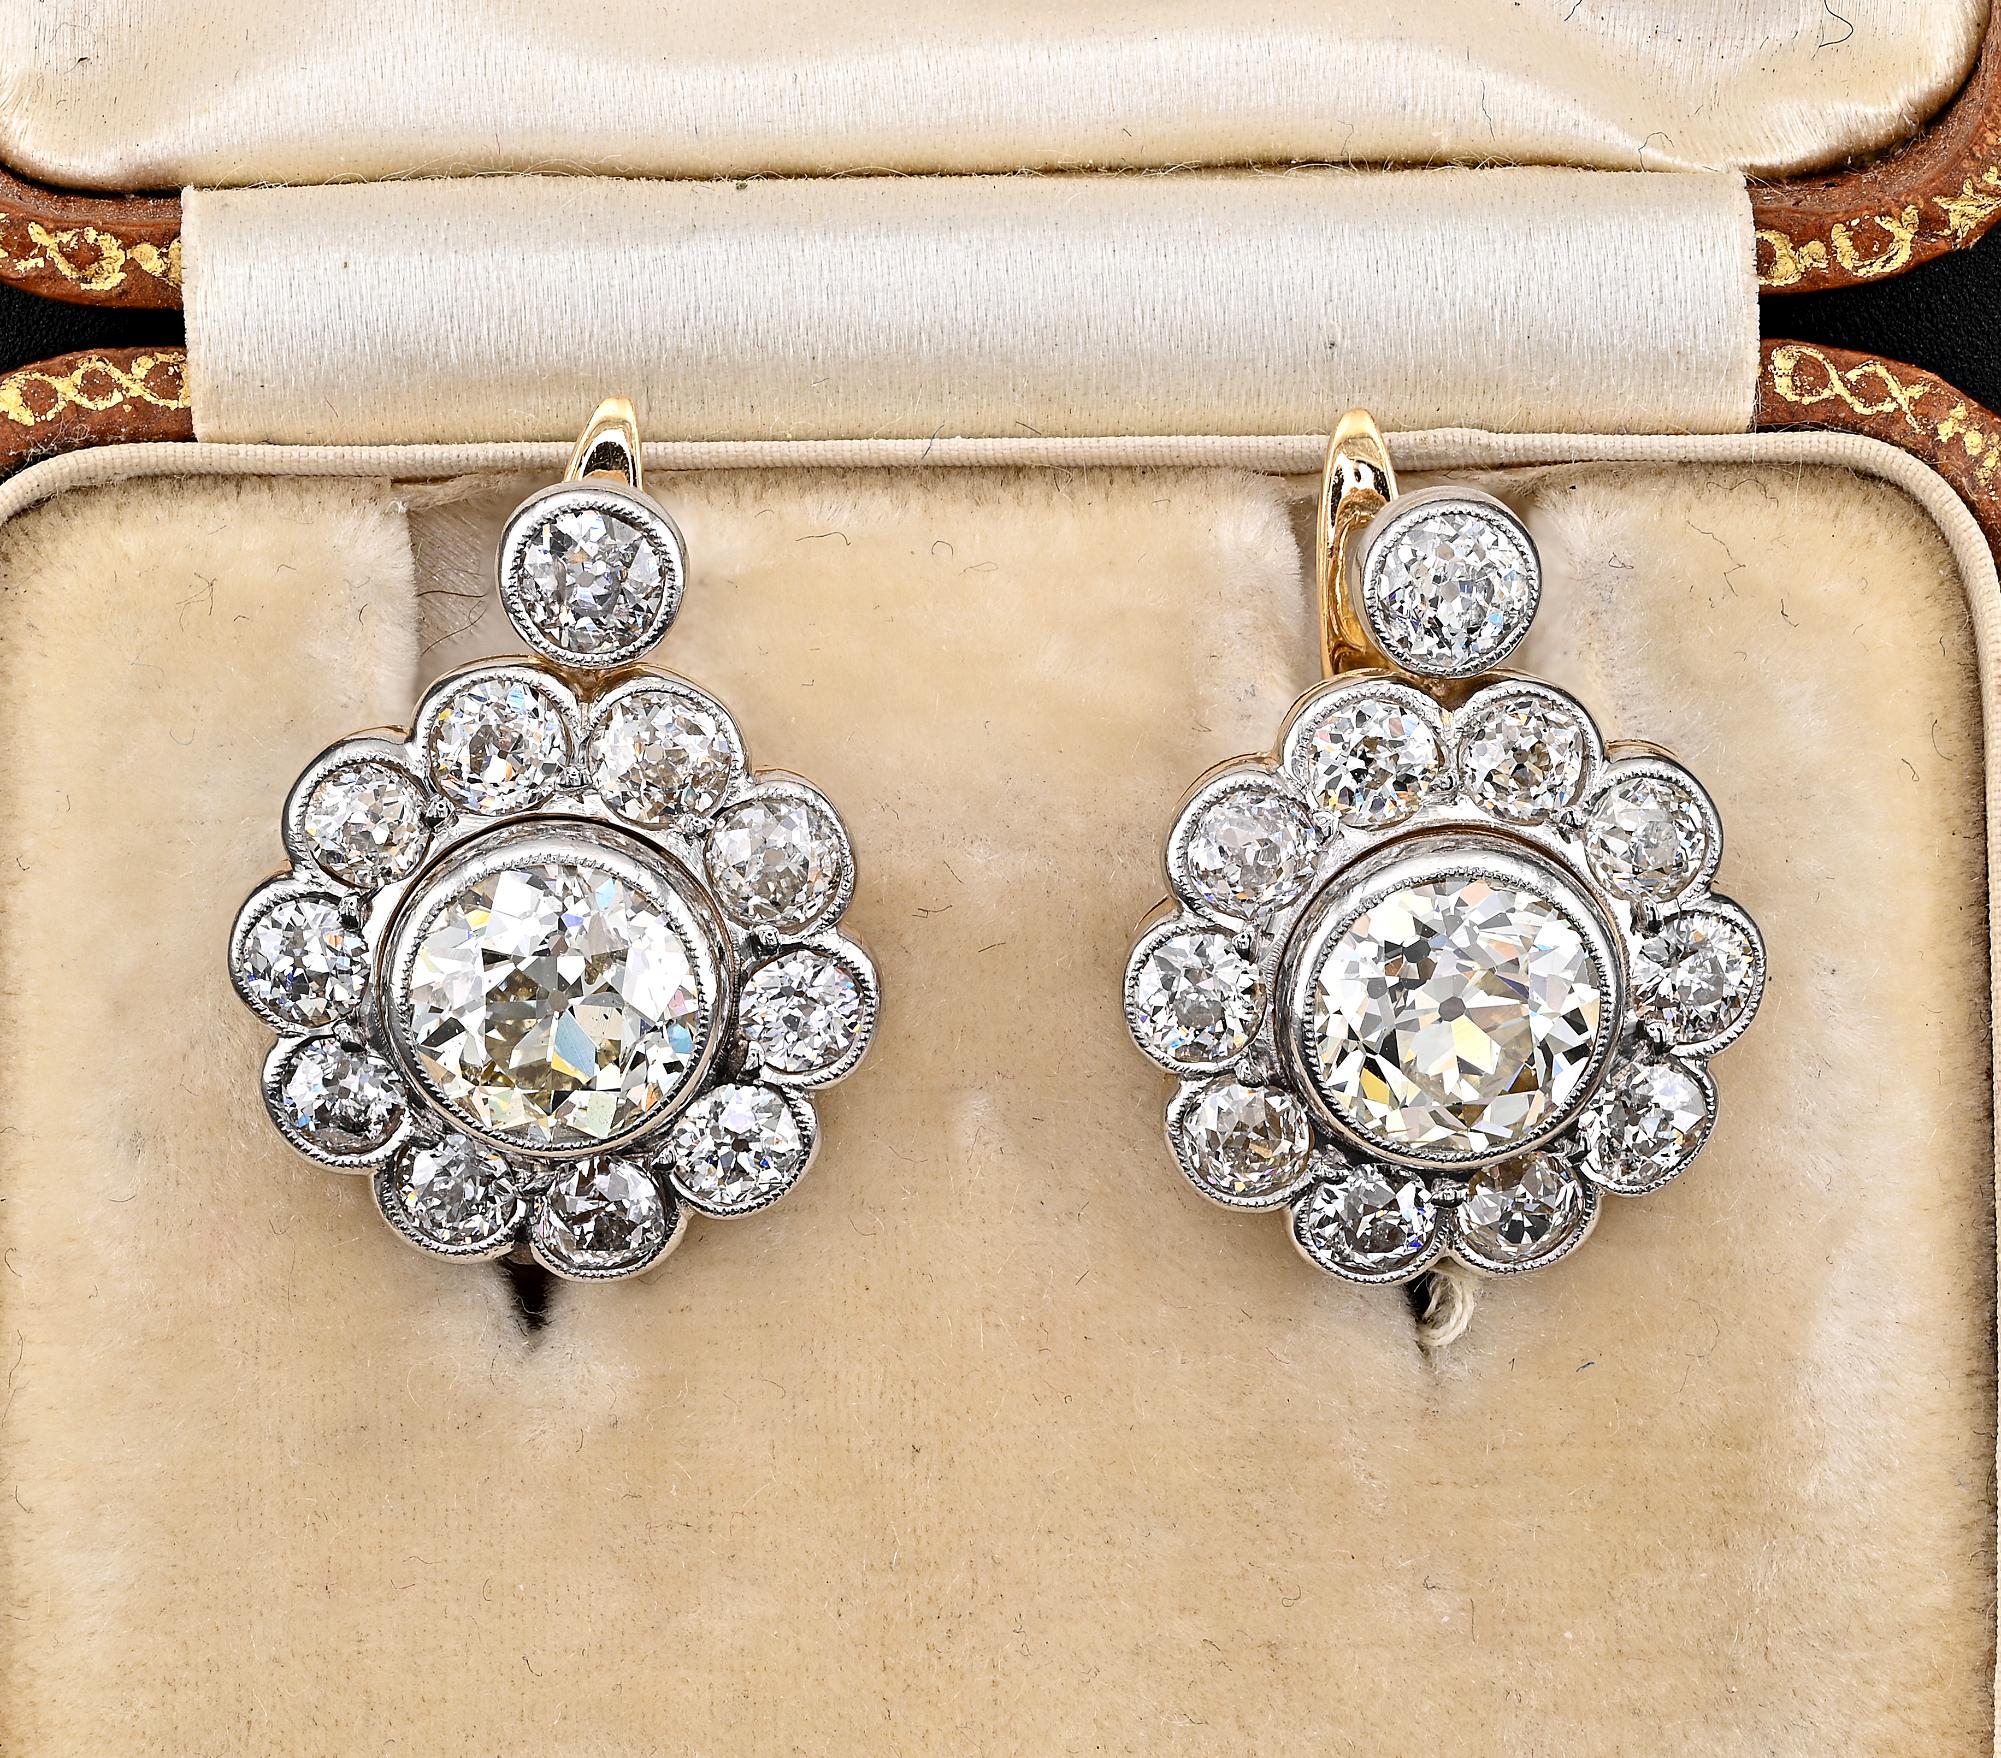 Dieses großartige Paar Ohrringe aus der Edwardianischen Zeit stammt aus dem Jahr 1905.
Wunderschöne Originalfassung aus massivem 18 KT Gold und Platin
Modelliert als klassischer Diamant-Gänseblümchen-Cluster mit einem größeren Diamanten in der